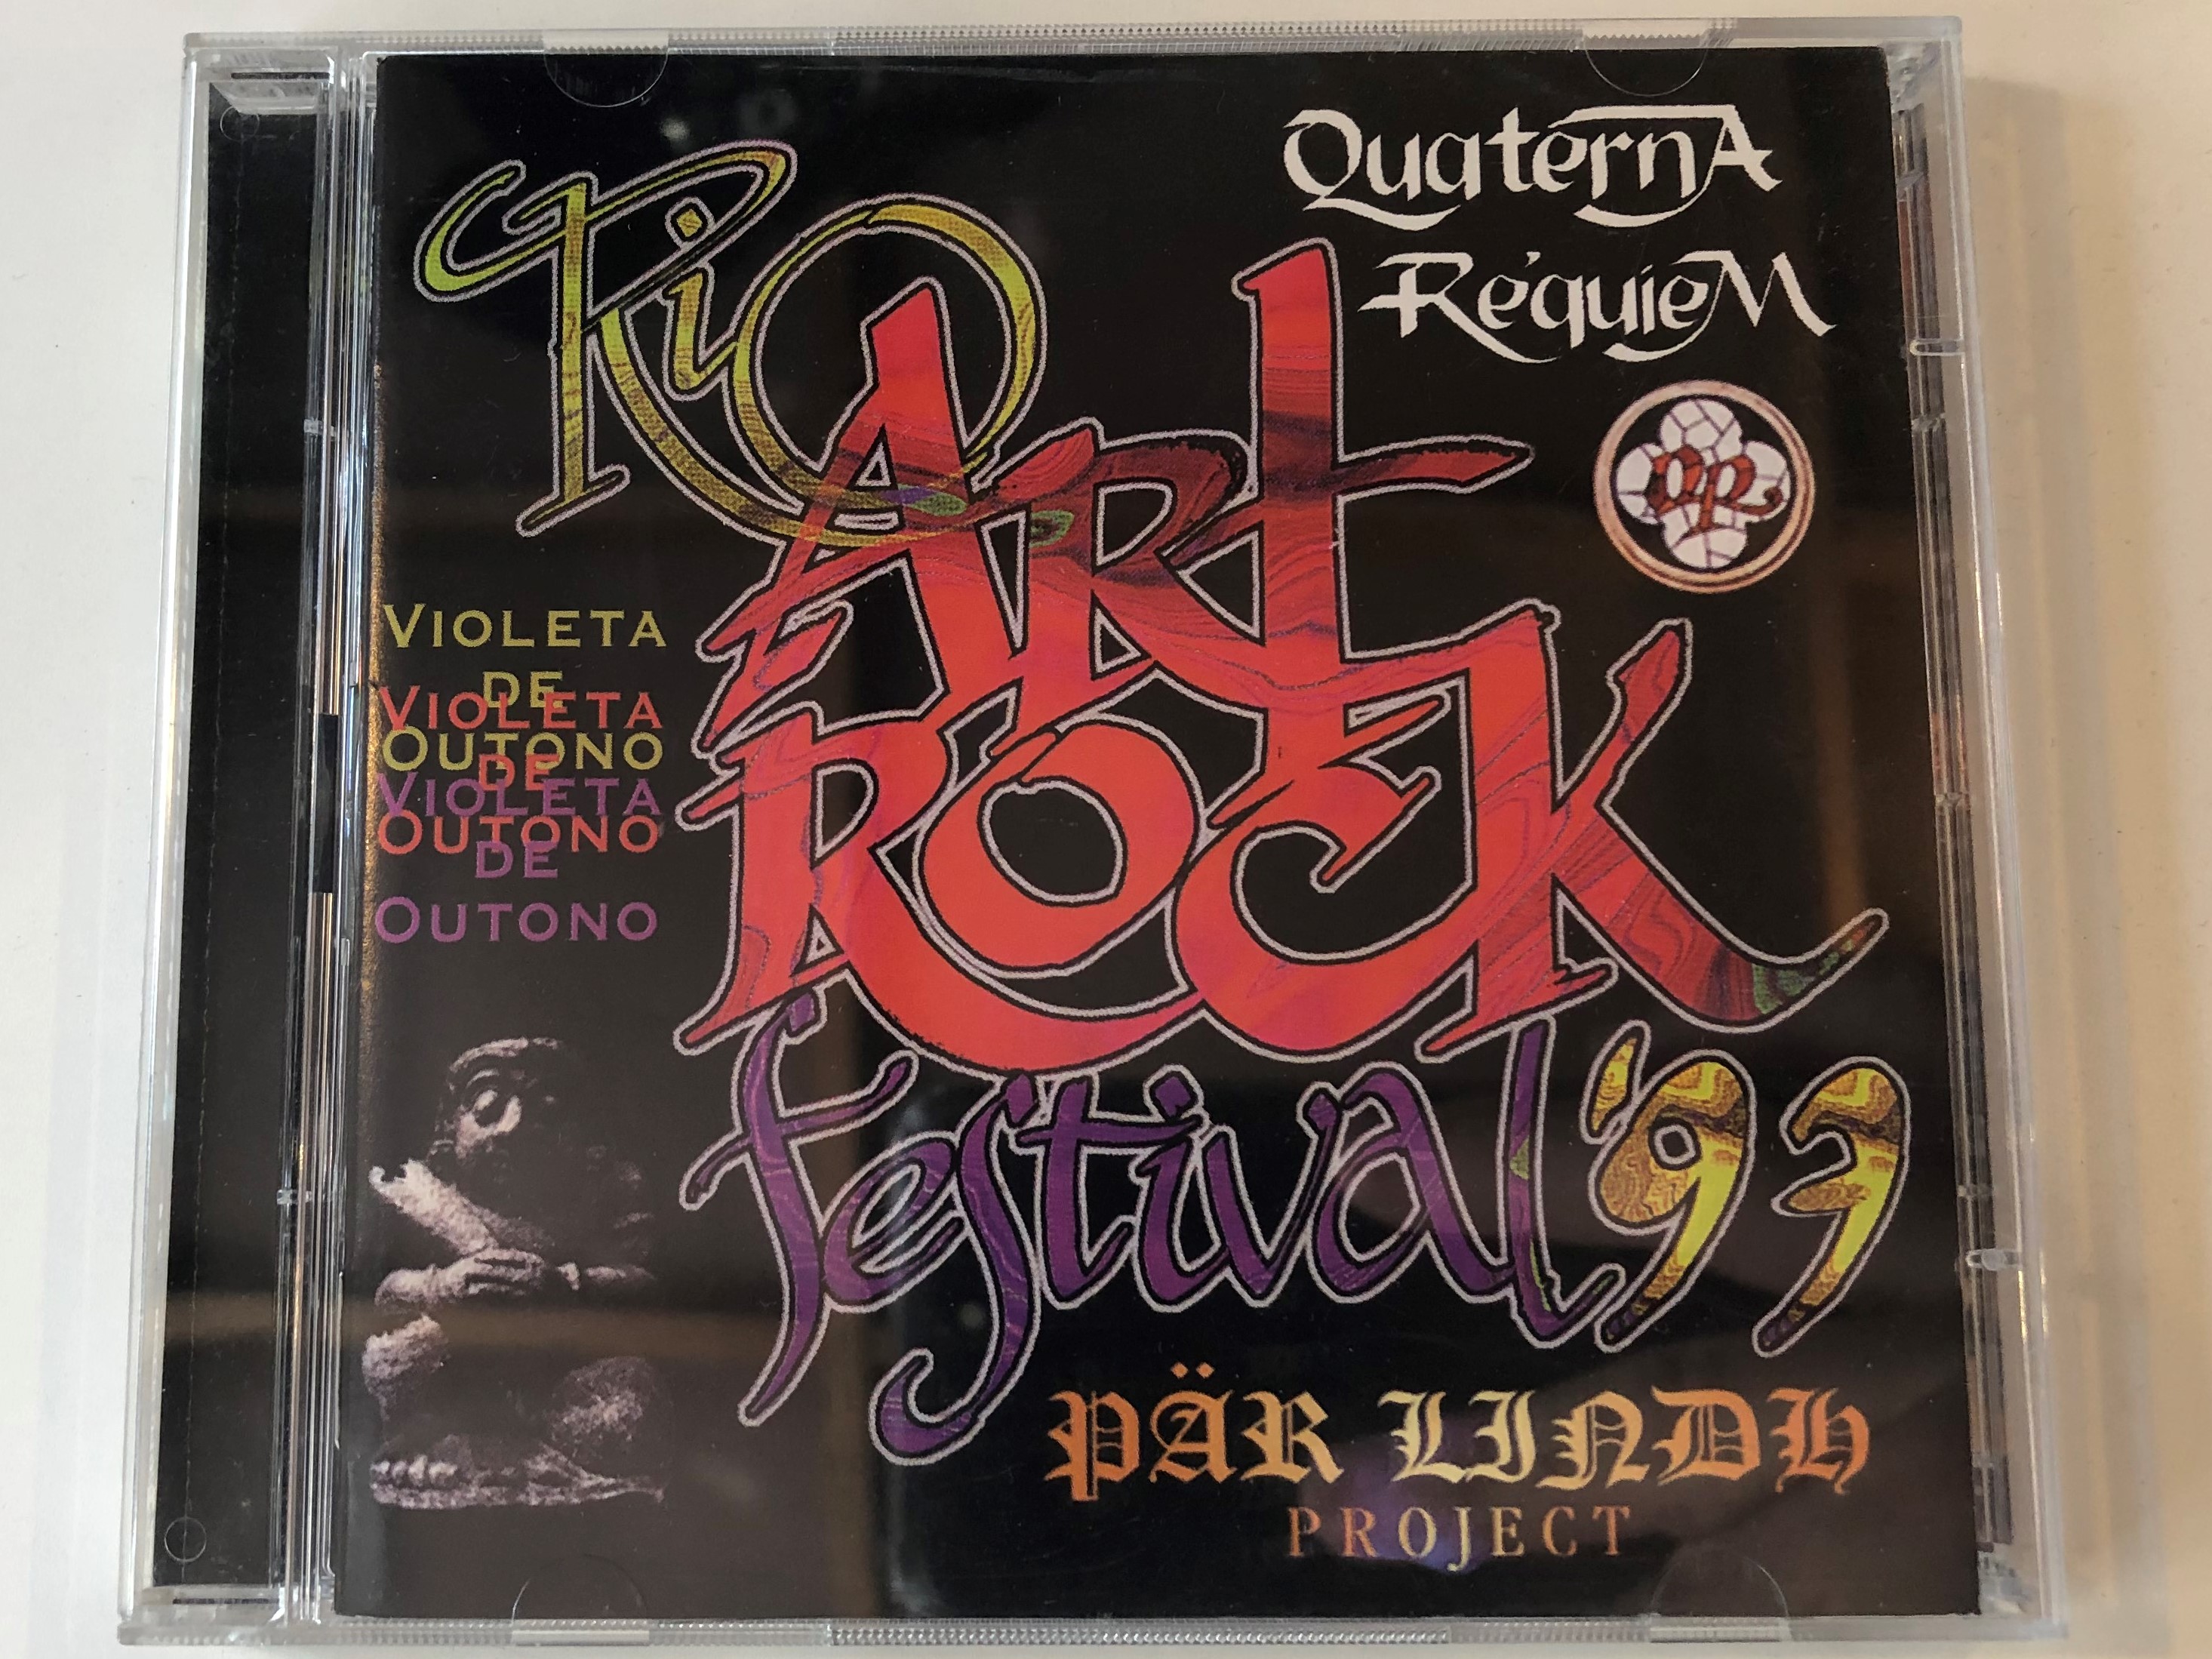 rio-art-rock-festival-97-p-r-lindh-project-violeta-de-outono-quaterna-r-quiem-rock-symphony-2x-audio-cd-1-.jpg